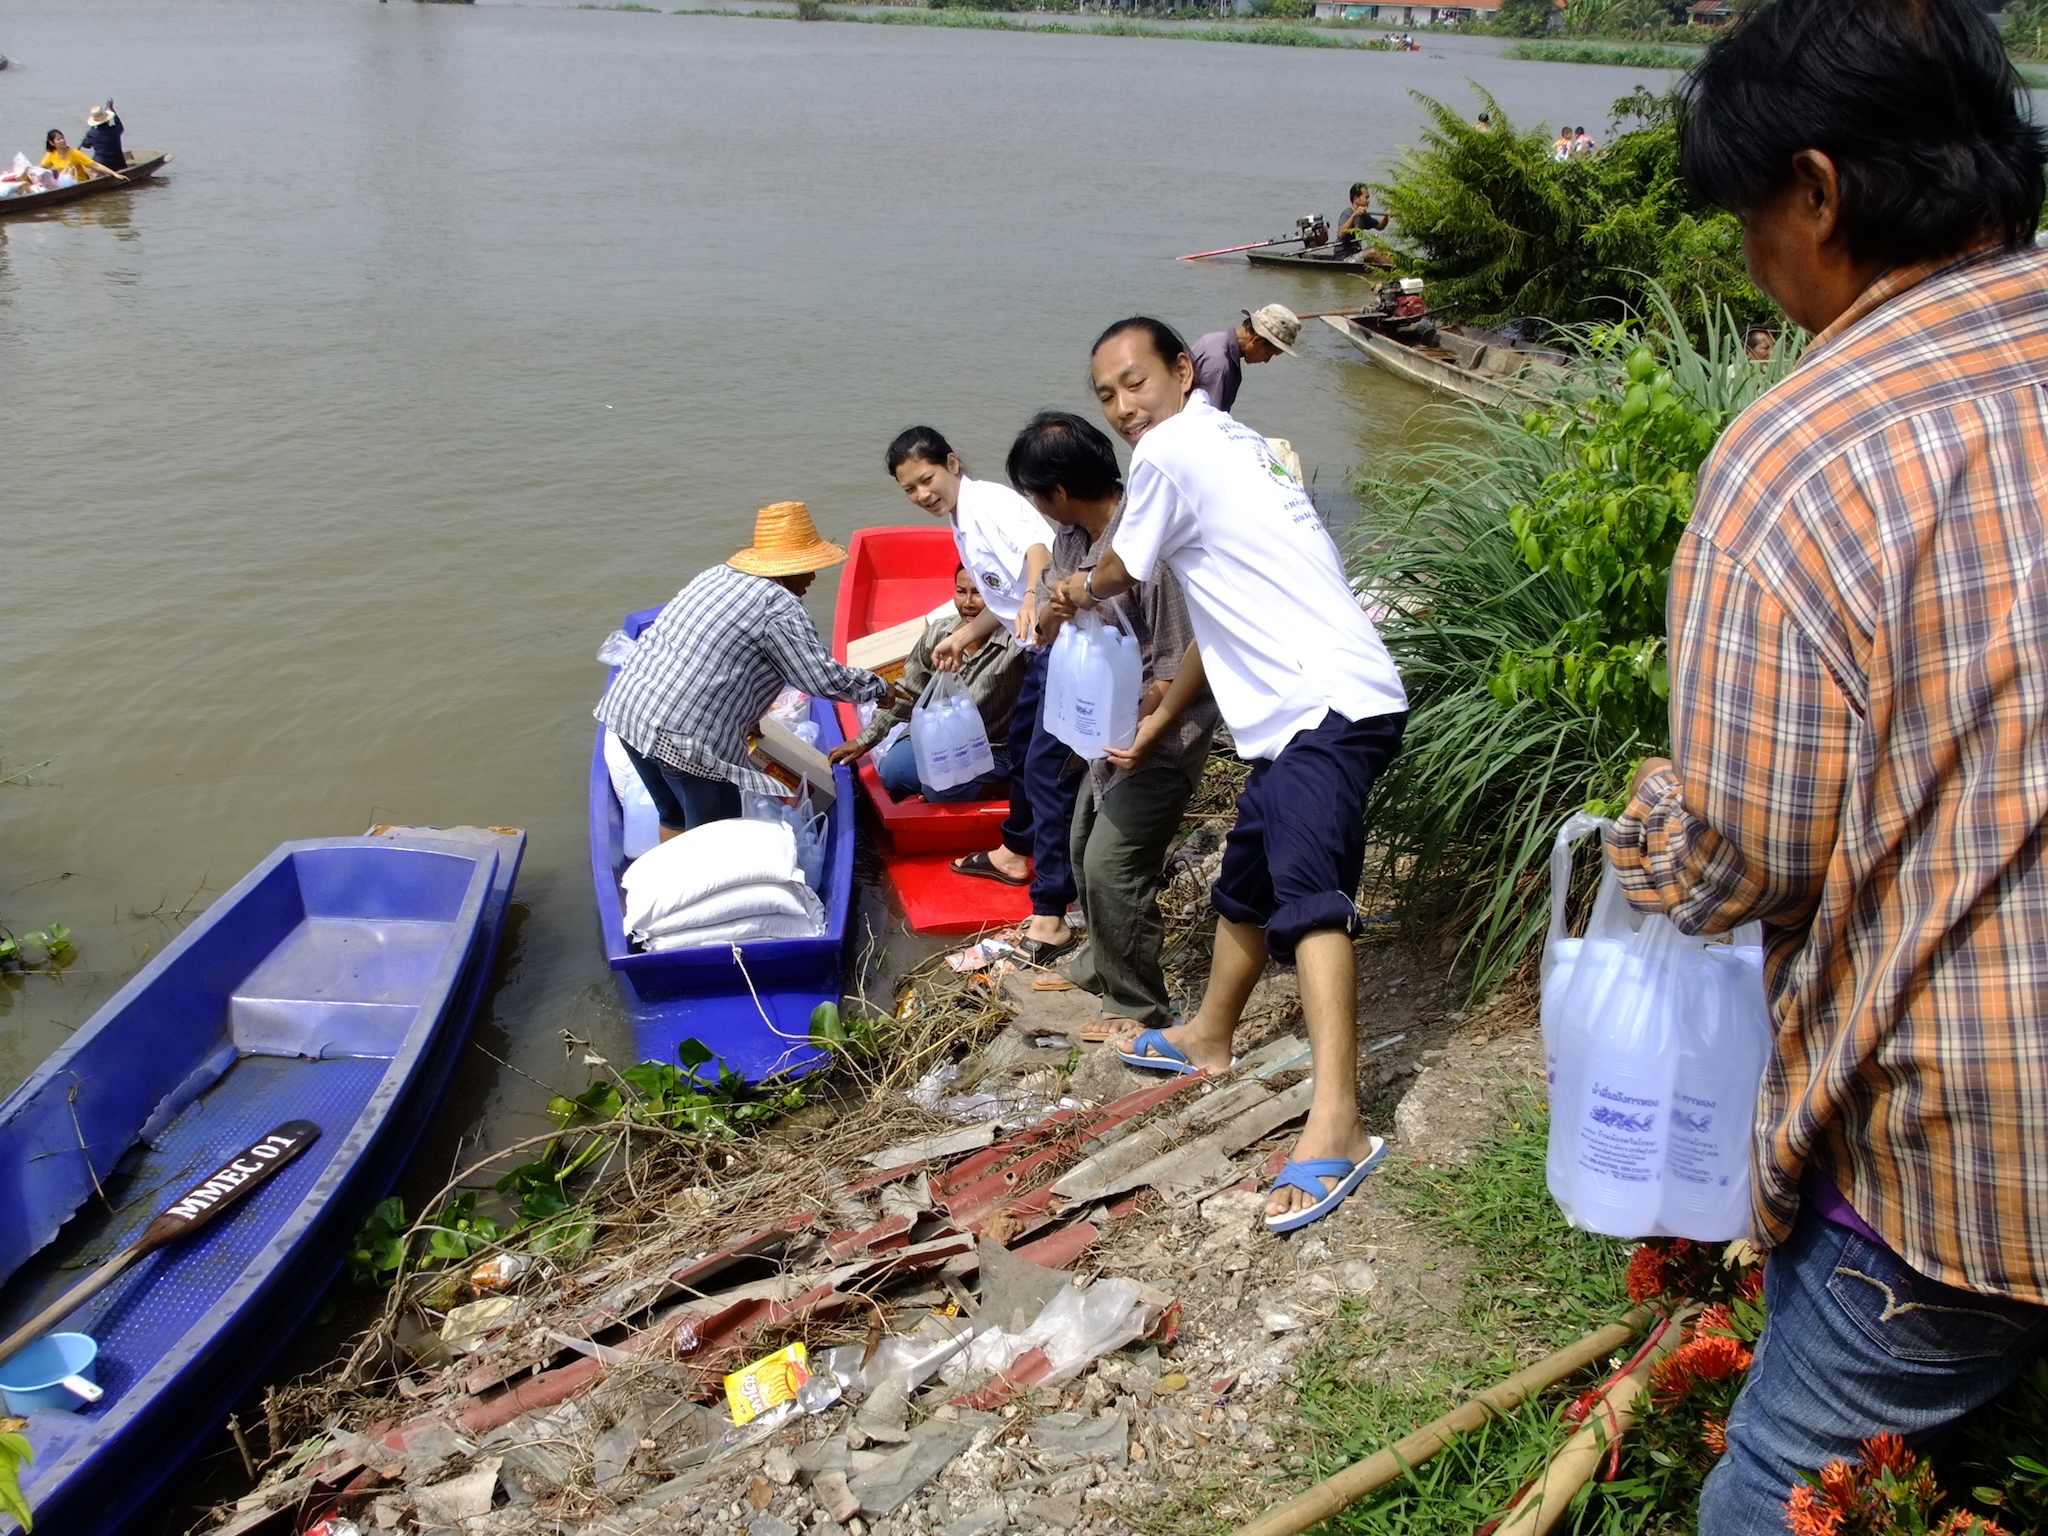 โครงการช่วยผู้ประสบภัยน้ำท่วมจังหวัดปราจีนบุรี วันที่ 23 ตุลาคม 2556 ณ  พื้นที่เขตตำบลบางกระเบา  อำเภอบ้านสร้าง  จังหวัดปราจีนบุรี